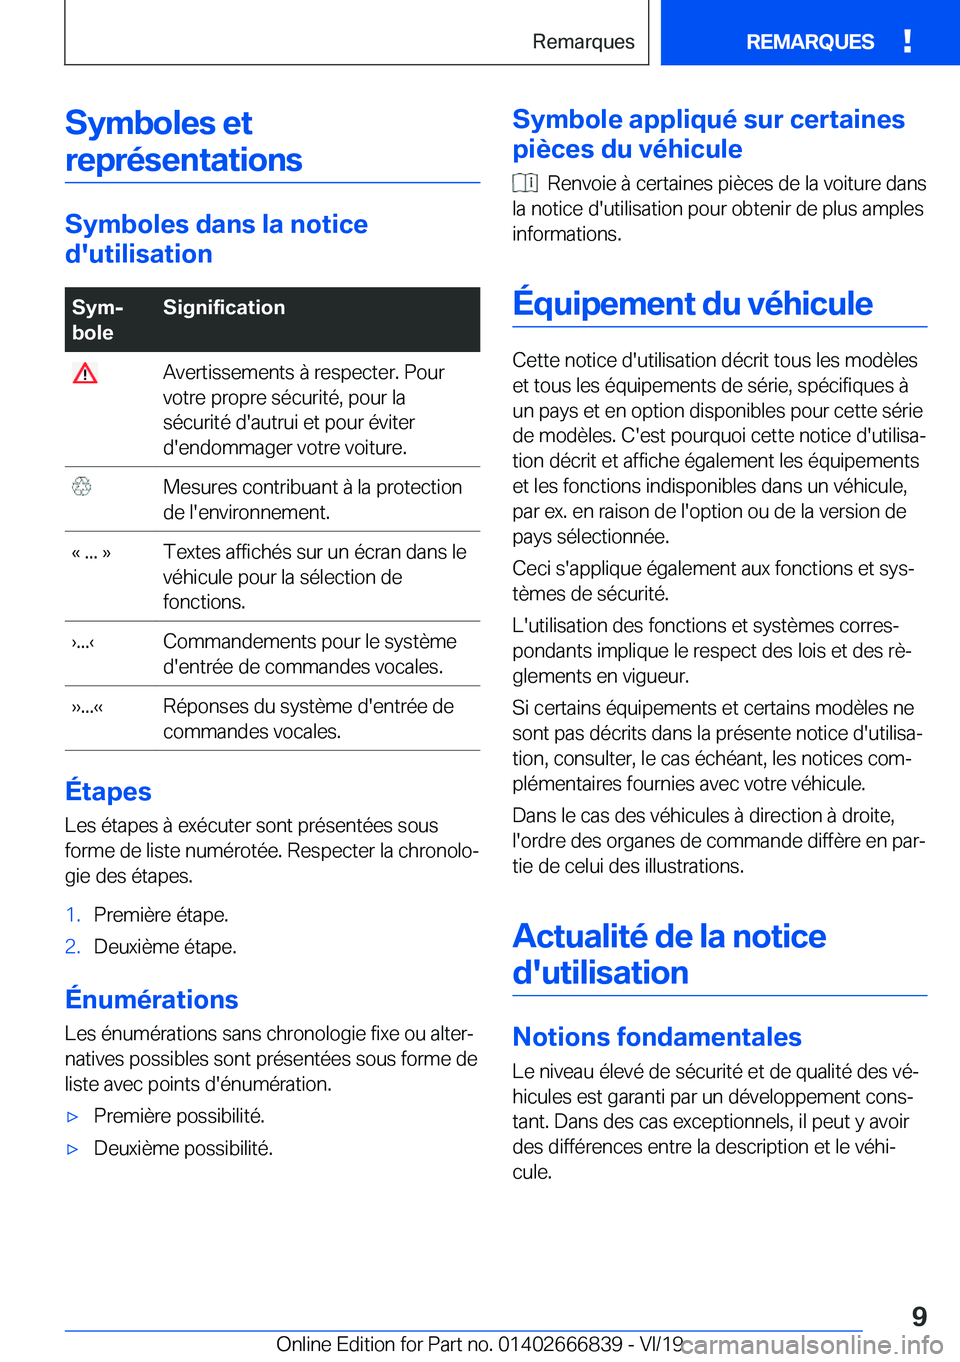 BMW X3 M 2020  Notices Demploi (in French) �S�y�m�b�o�l�e�s��e�t�r�e�p�r�é�s�e�n�t�a�t�i�o�n�s
�S�y�m�b�o�l�e�s��d�a�n�s��l�a��n�o�t�i�c�e
�d�'�u�t�i�l�i�s�a�t�i�o�n
�S�y�mj
�b�o�l�e�S�i�g�n�i�f�i�c�a�t�i�o�n��A�v�e�r�t�i�s�s�e�m�e�